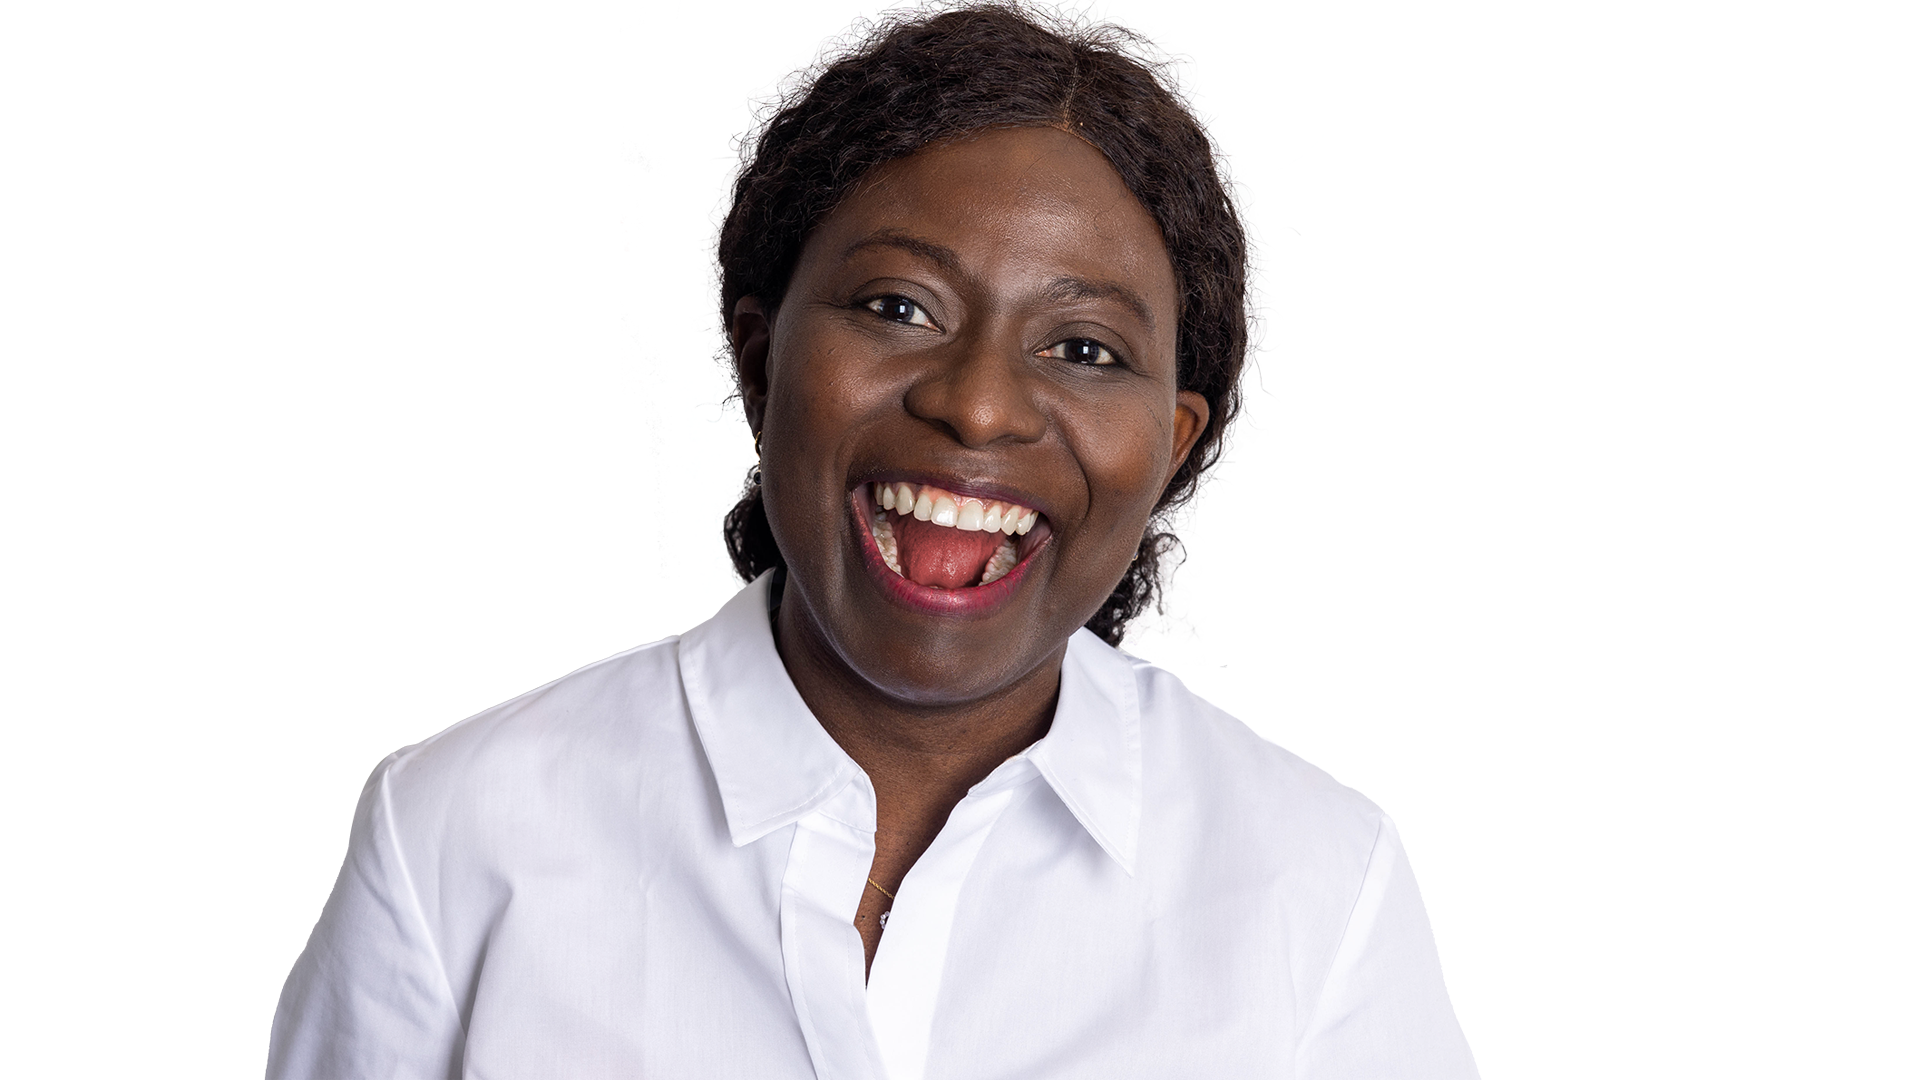 Zahnärztin Margarete Olowookere lacht in die Kamera und ihr Mund formt dabei das "O" in WoW